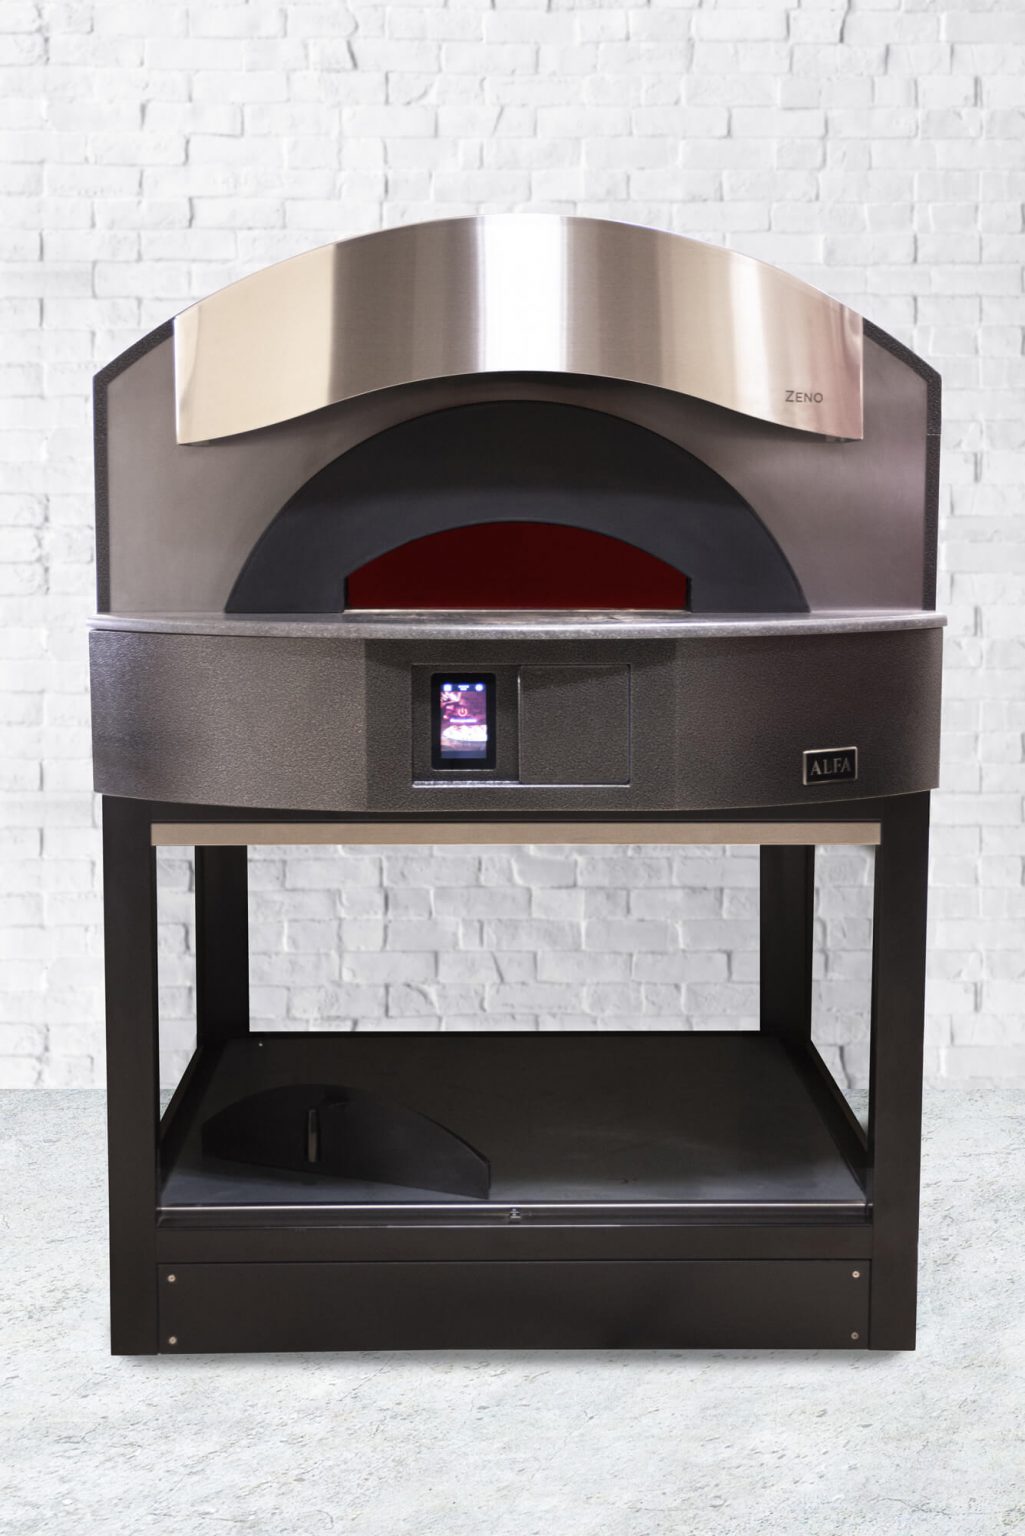 napolitan-pizza-oven-zeno-electric-perfomance-design-1025x1536